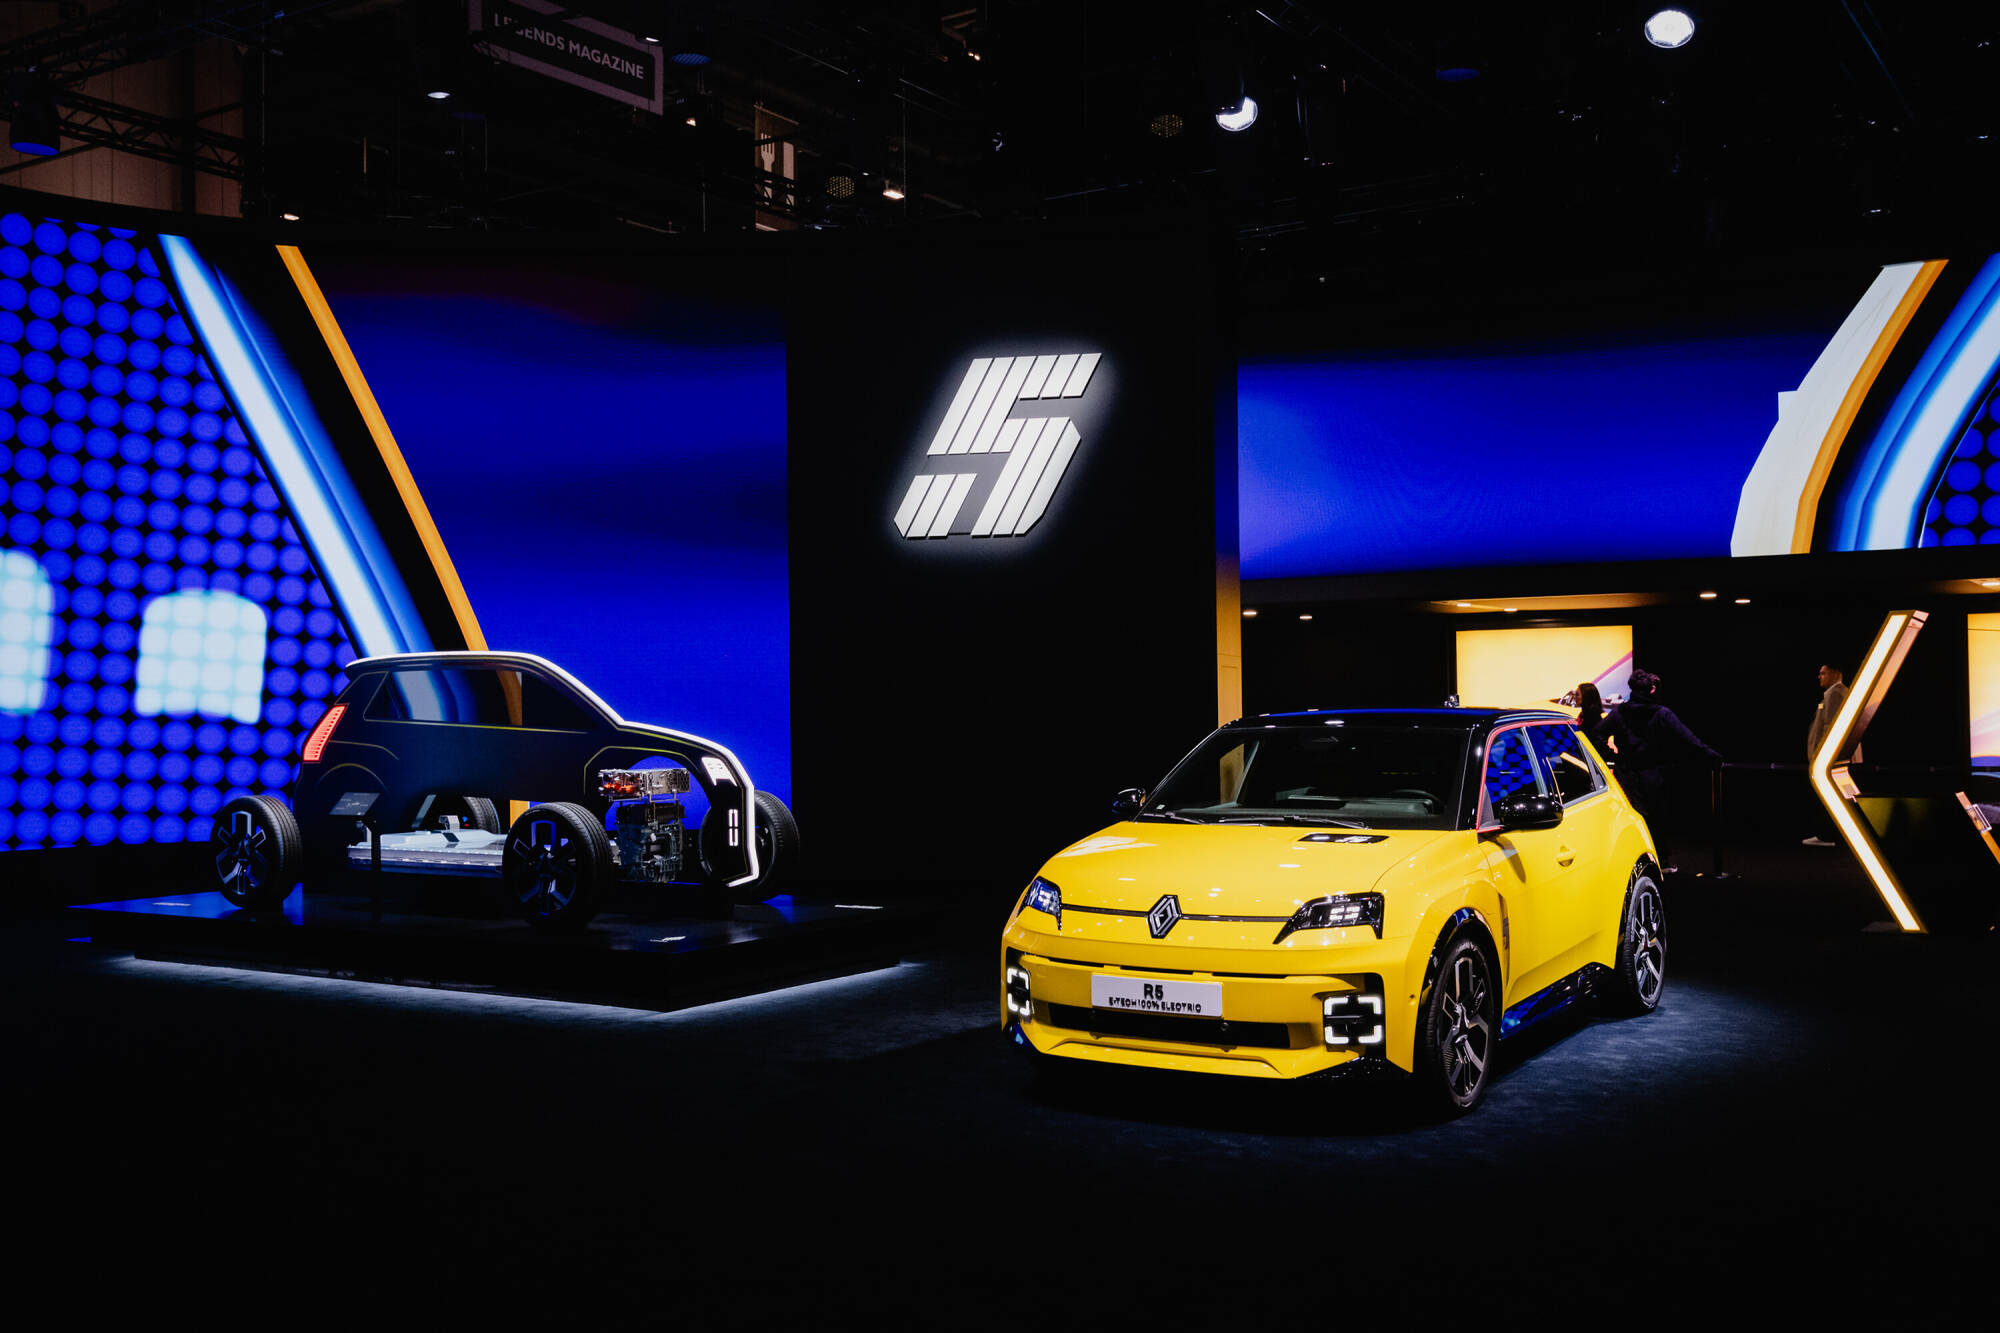 Bientôt l’ouverture des commandes prioritaires de la Renault 5 électrique